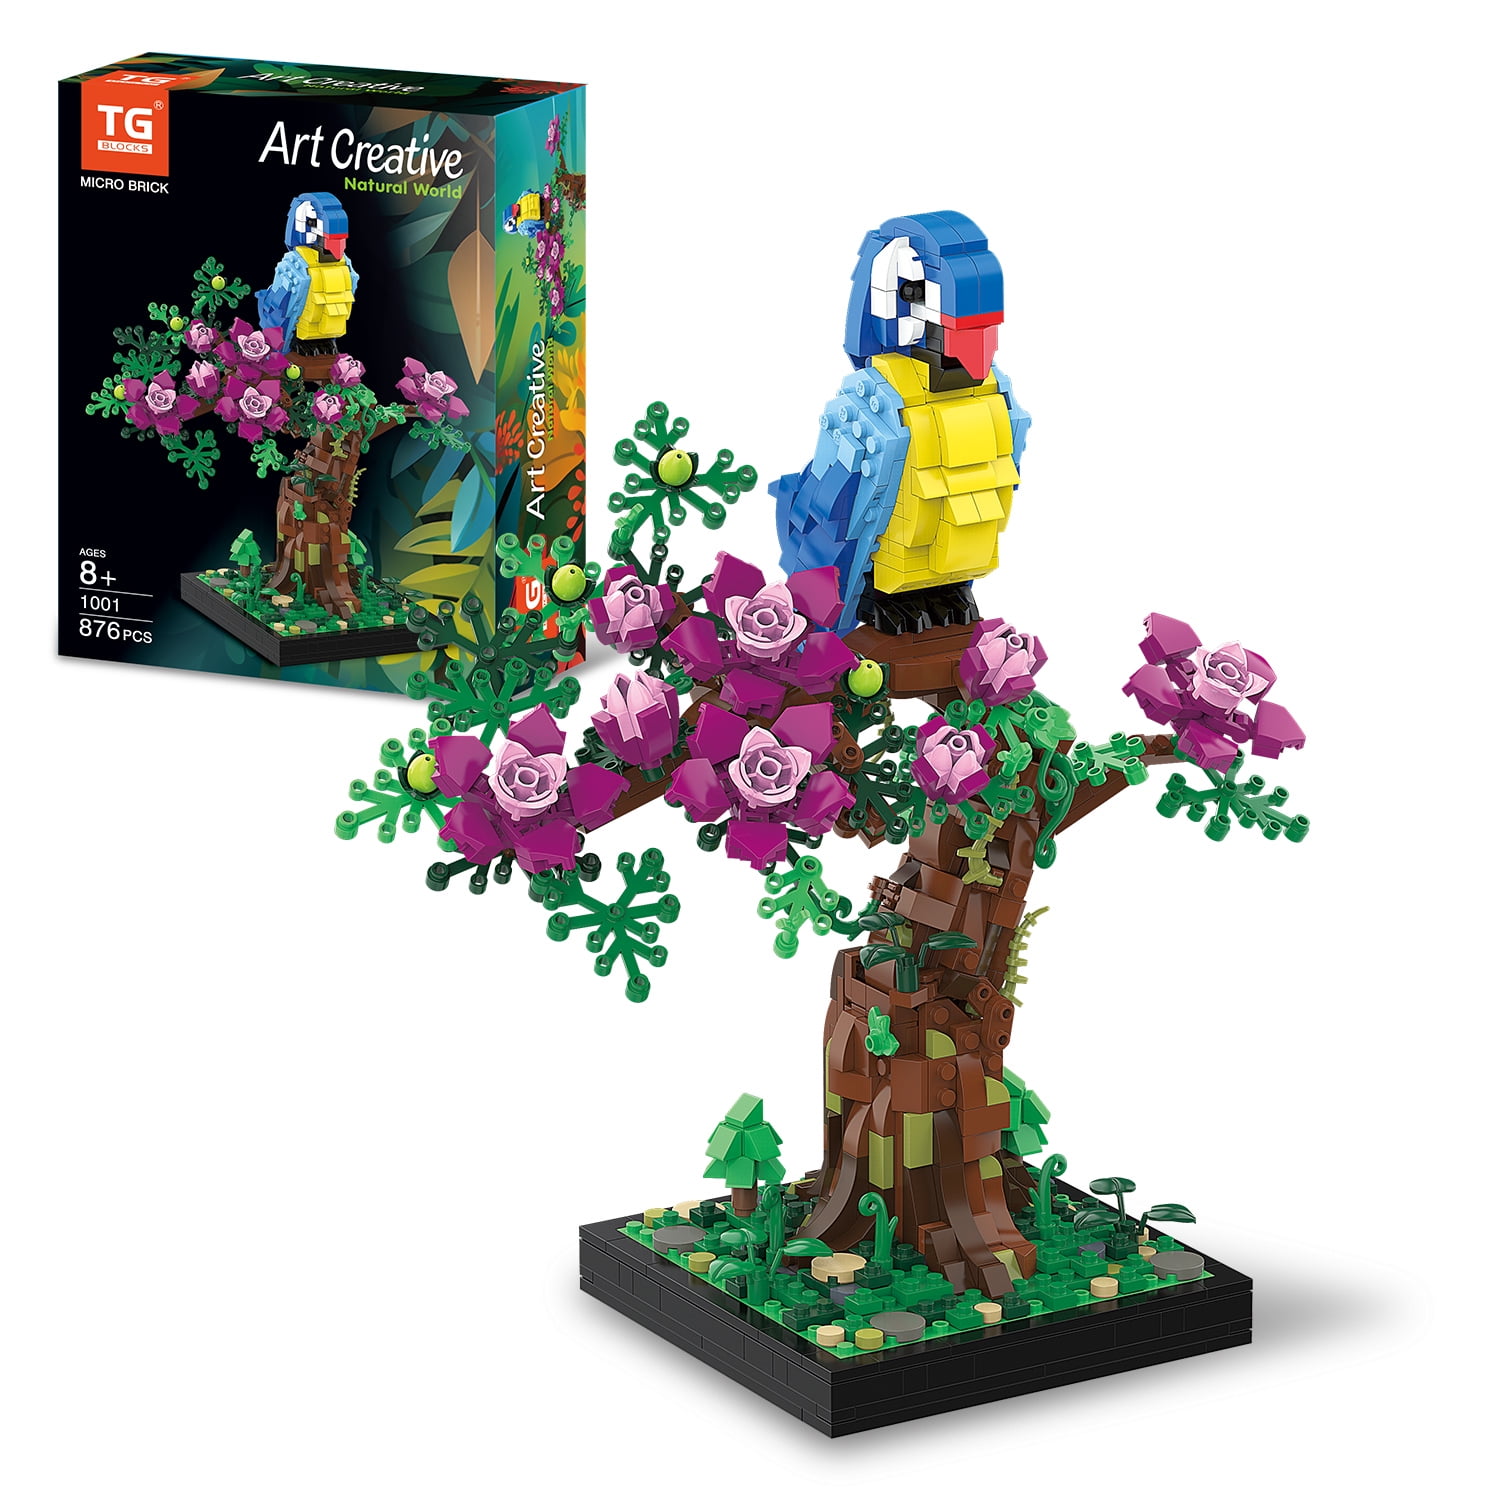 LEGO Rose - 40460